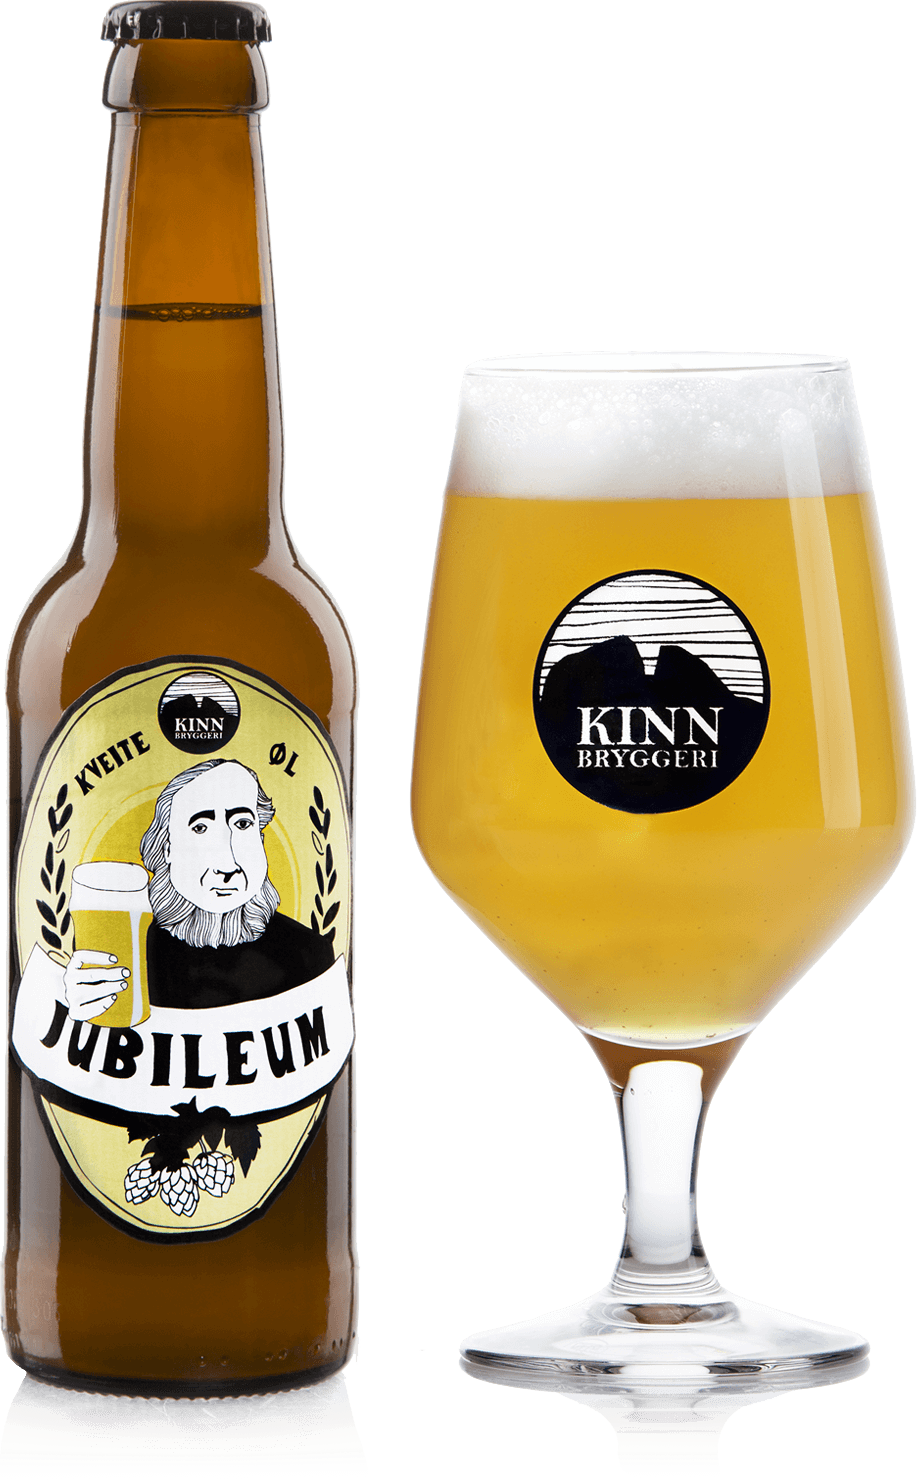 Wheat clipart malt. Jubileum belgian beer pilsner